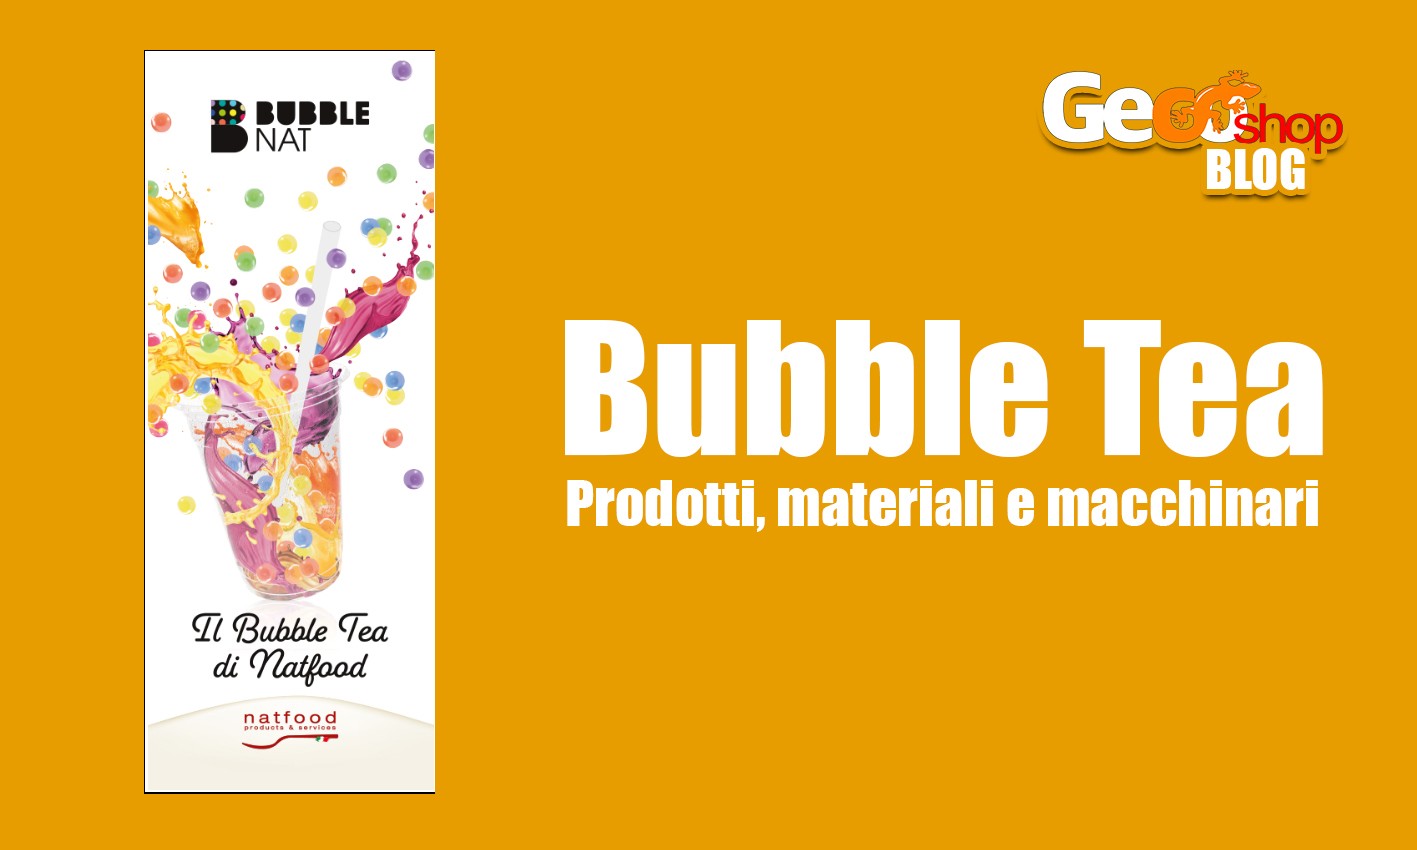 Bubble Nat - il bubble tea di Natfood